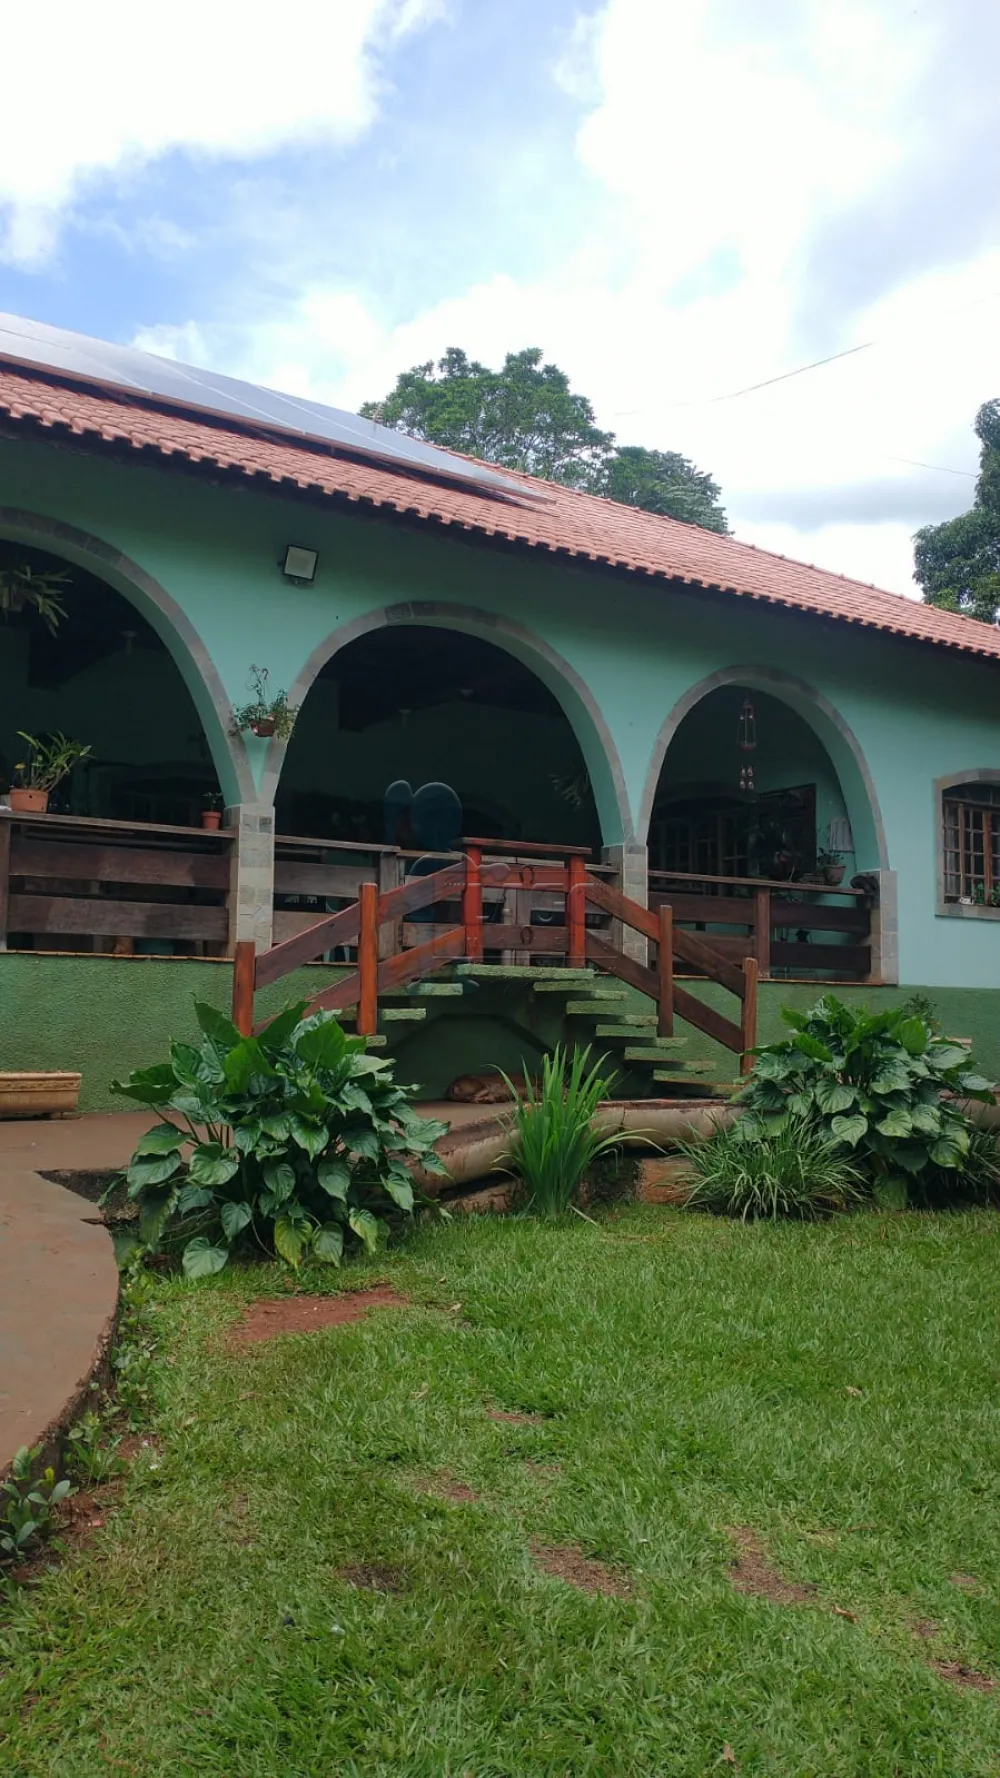 Comprar Casas / Chácara / Rancho em Ribeirão Preto - Foto 9